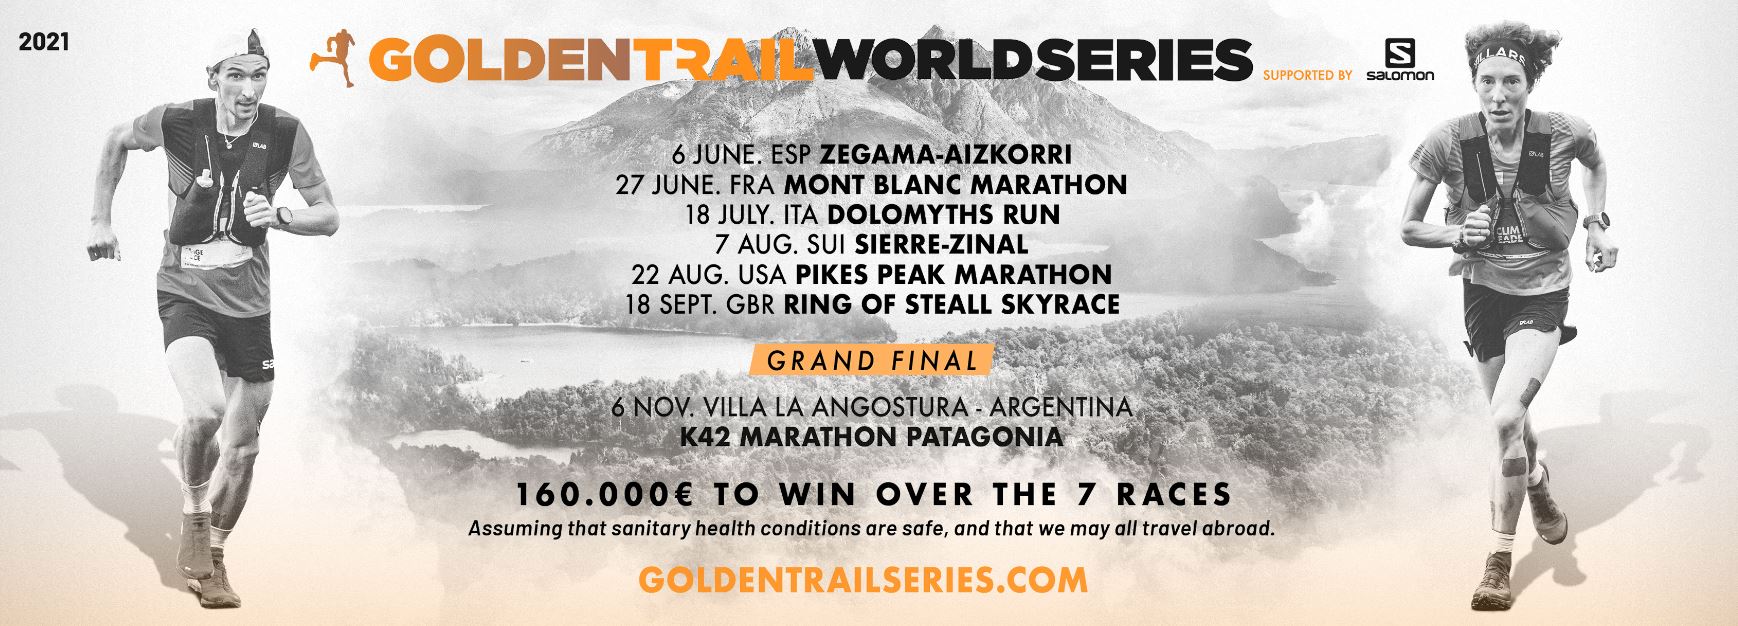 golden-trail-world-series-2021